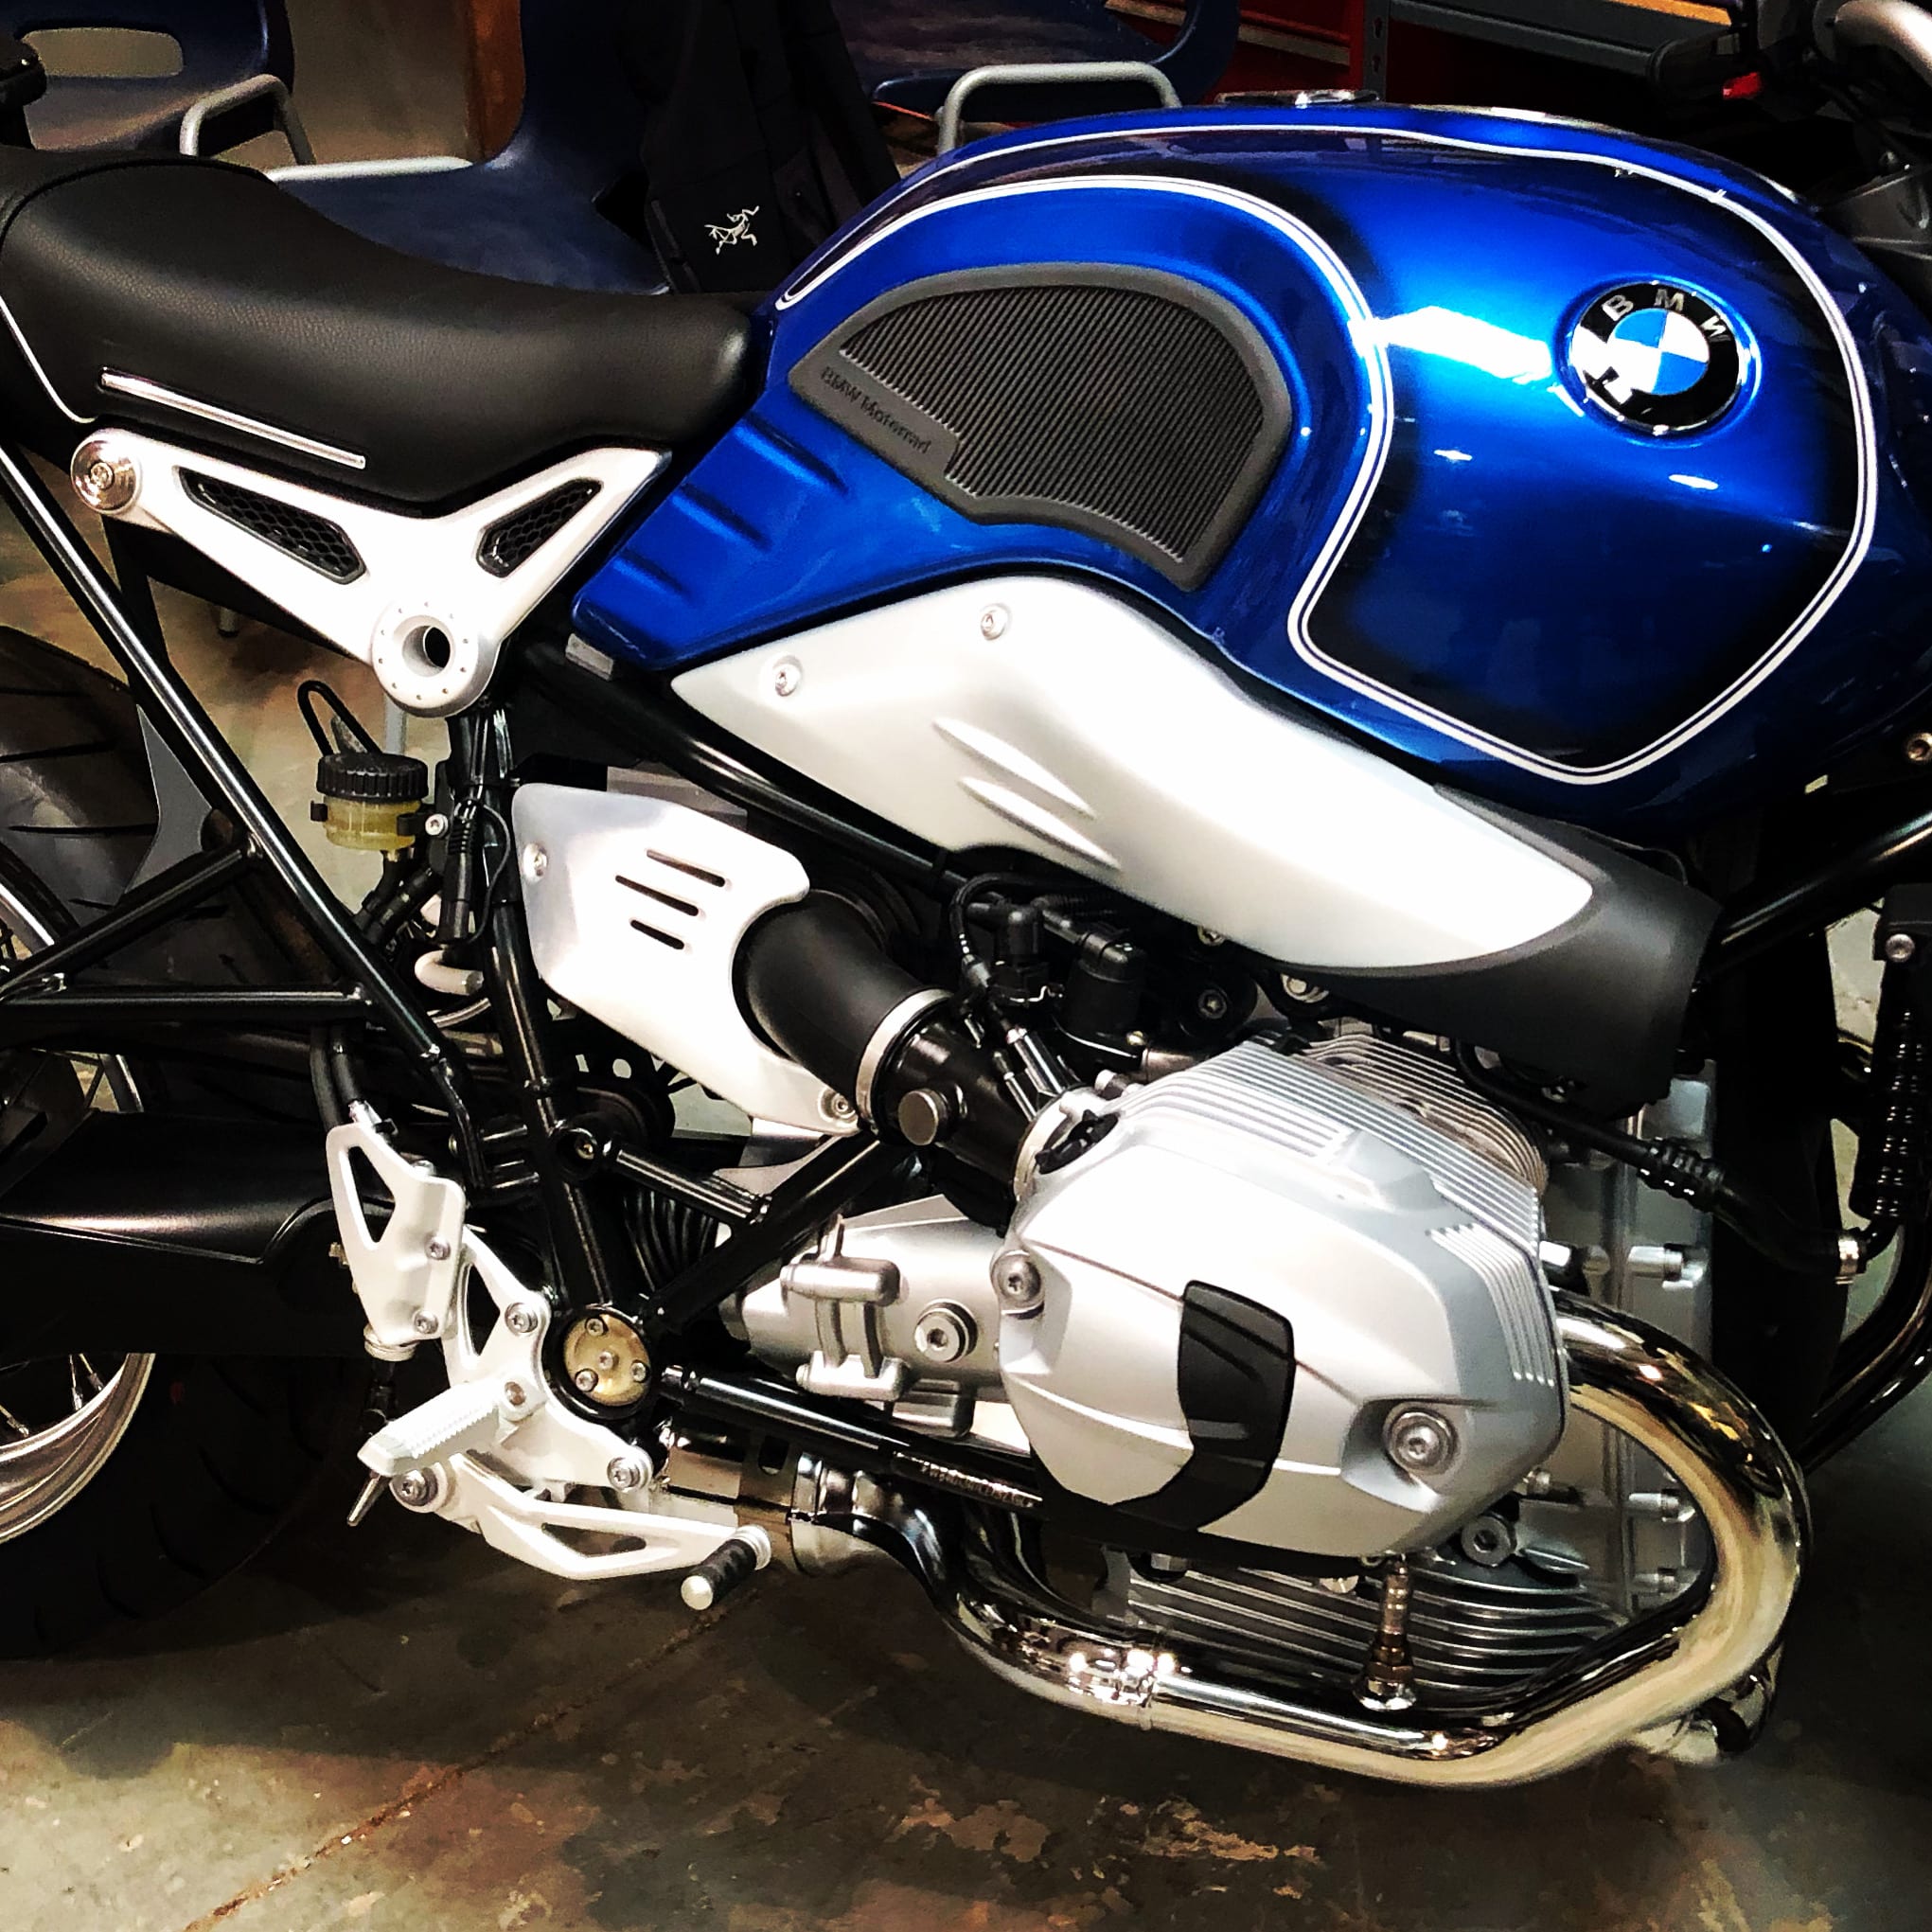 Sandia BMW Motorrad - Motorcycle Destinations